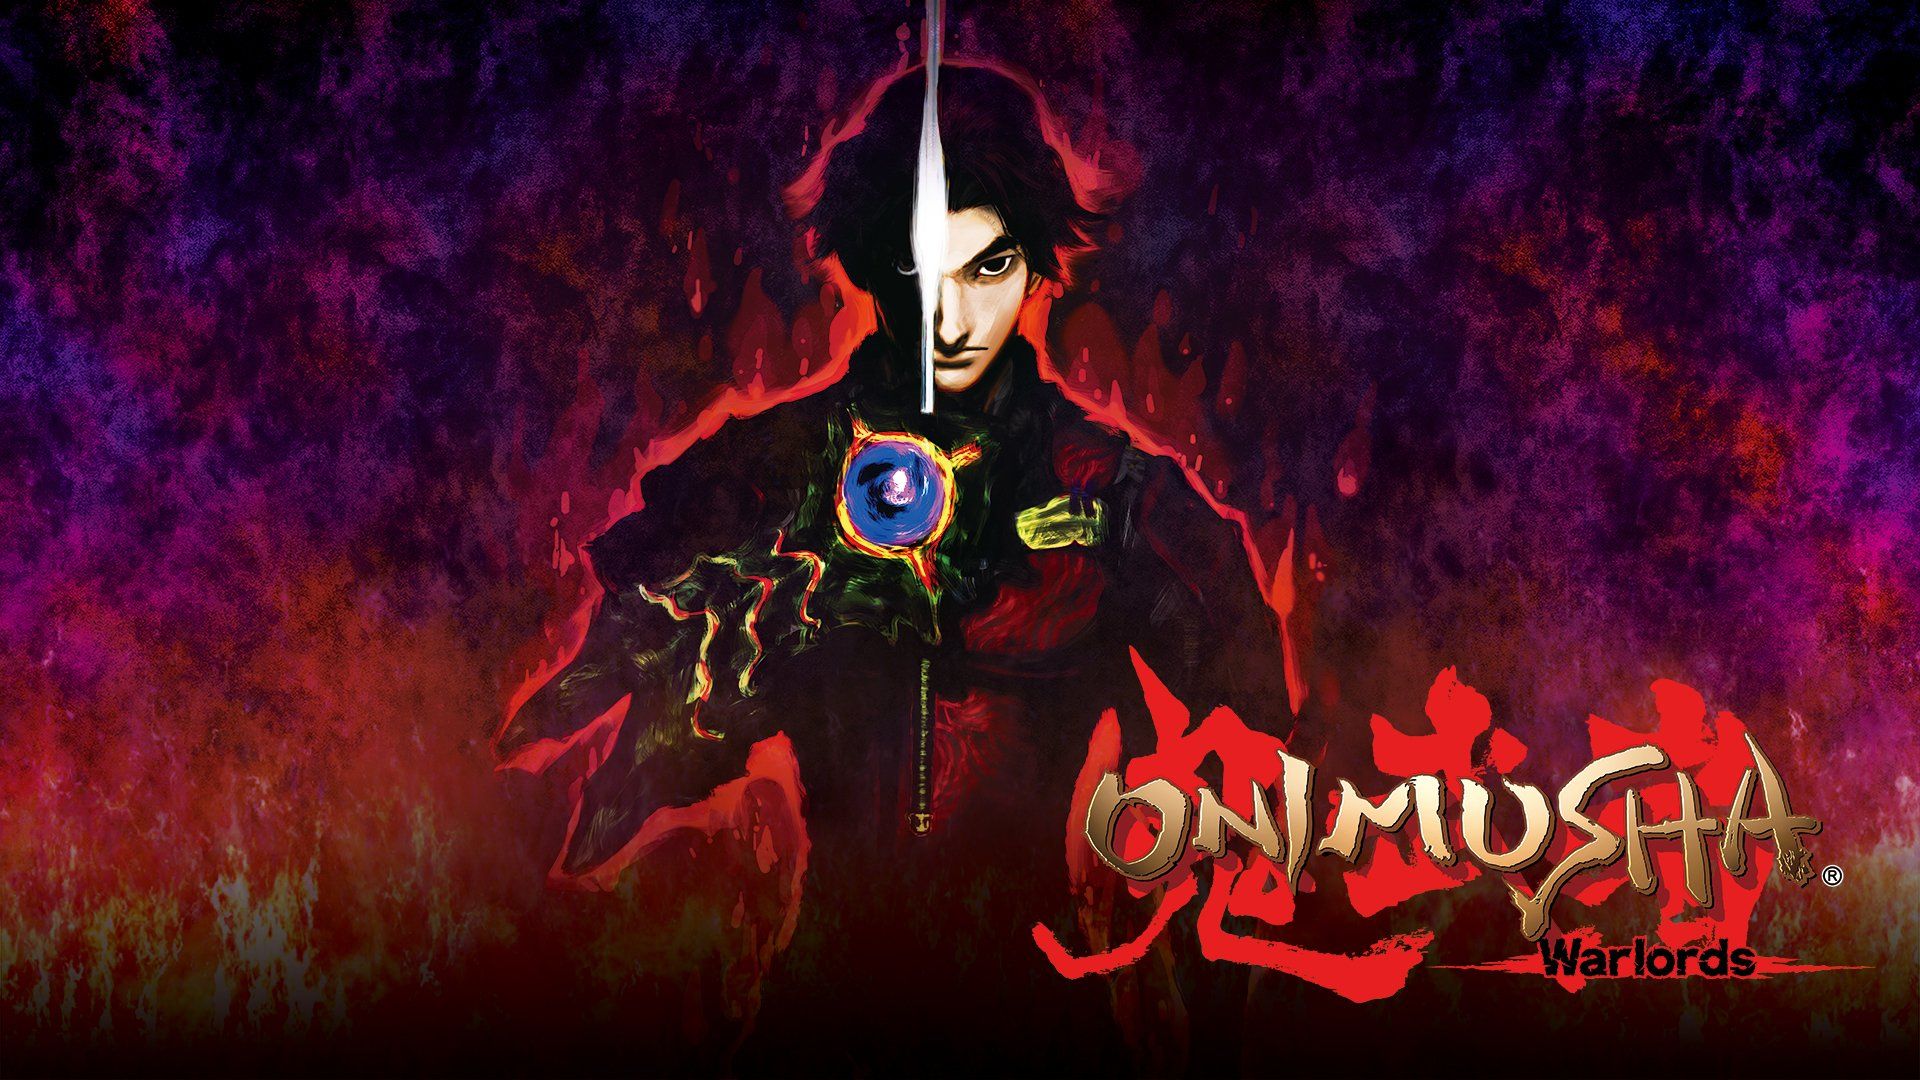 Onimusha: Warlords Key Art HD Wallpaper. Background Image